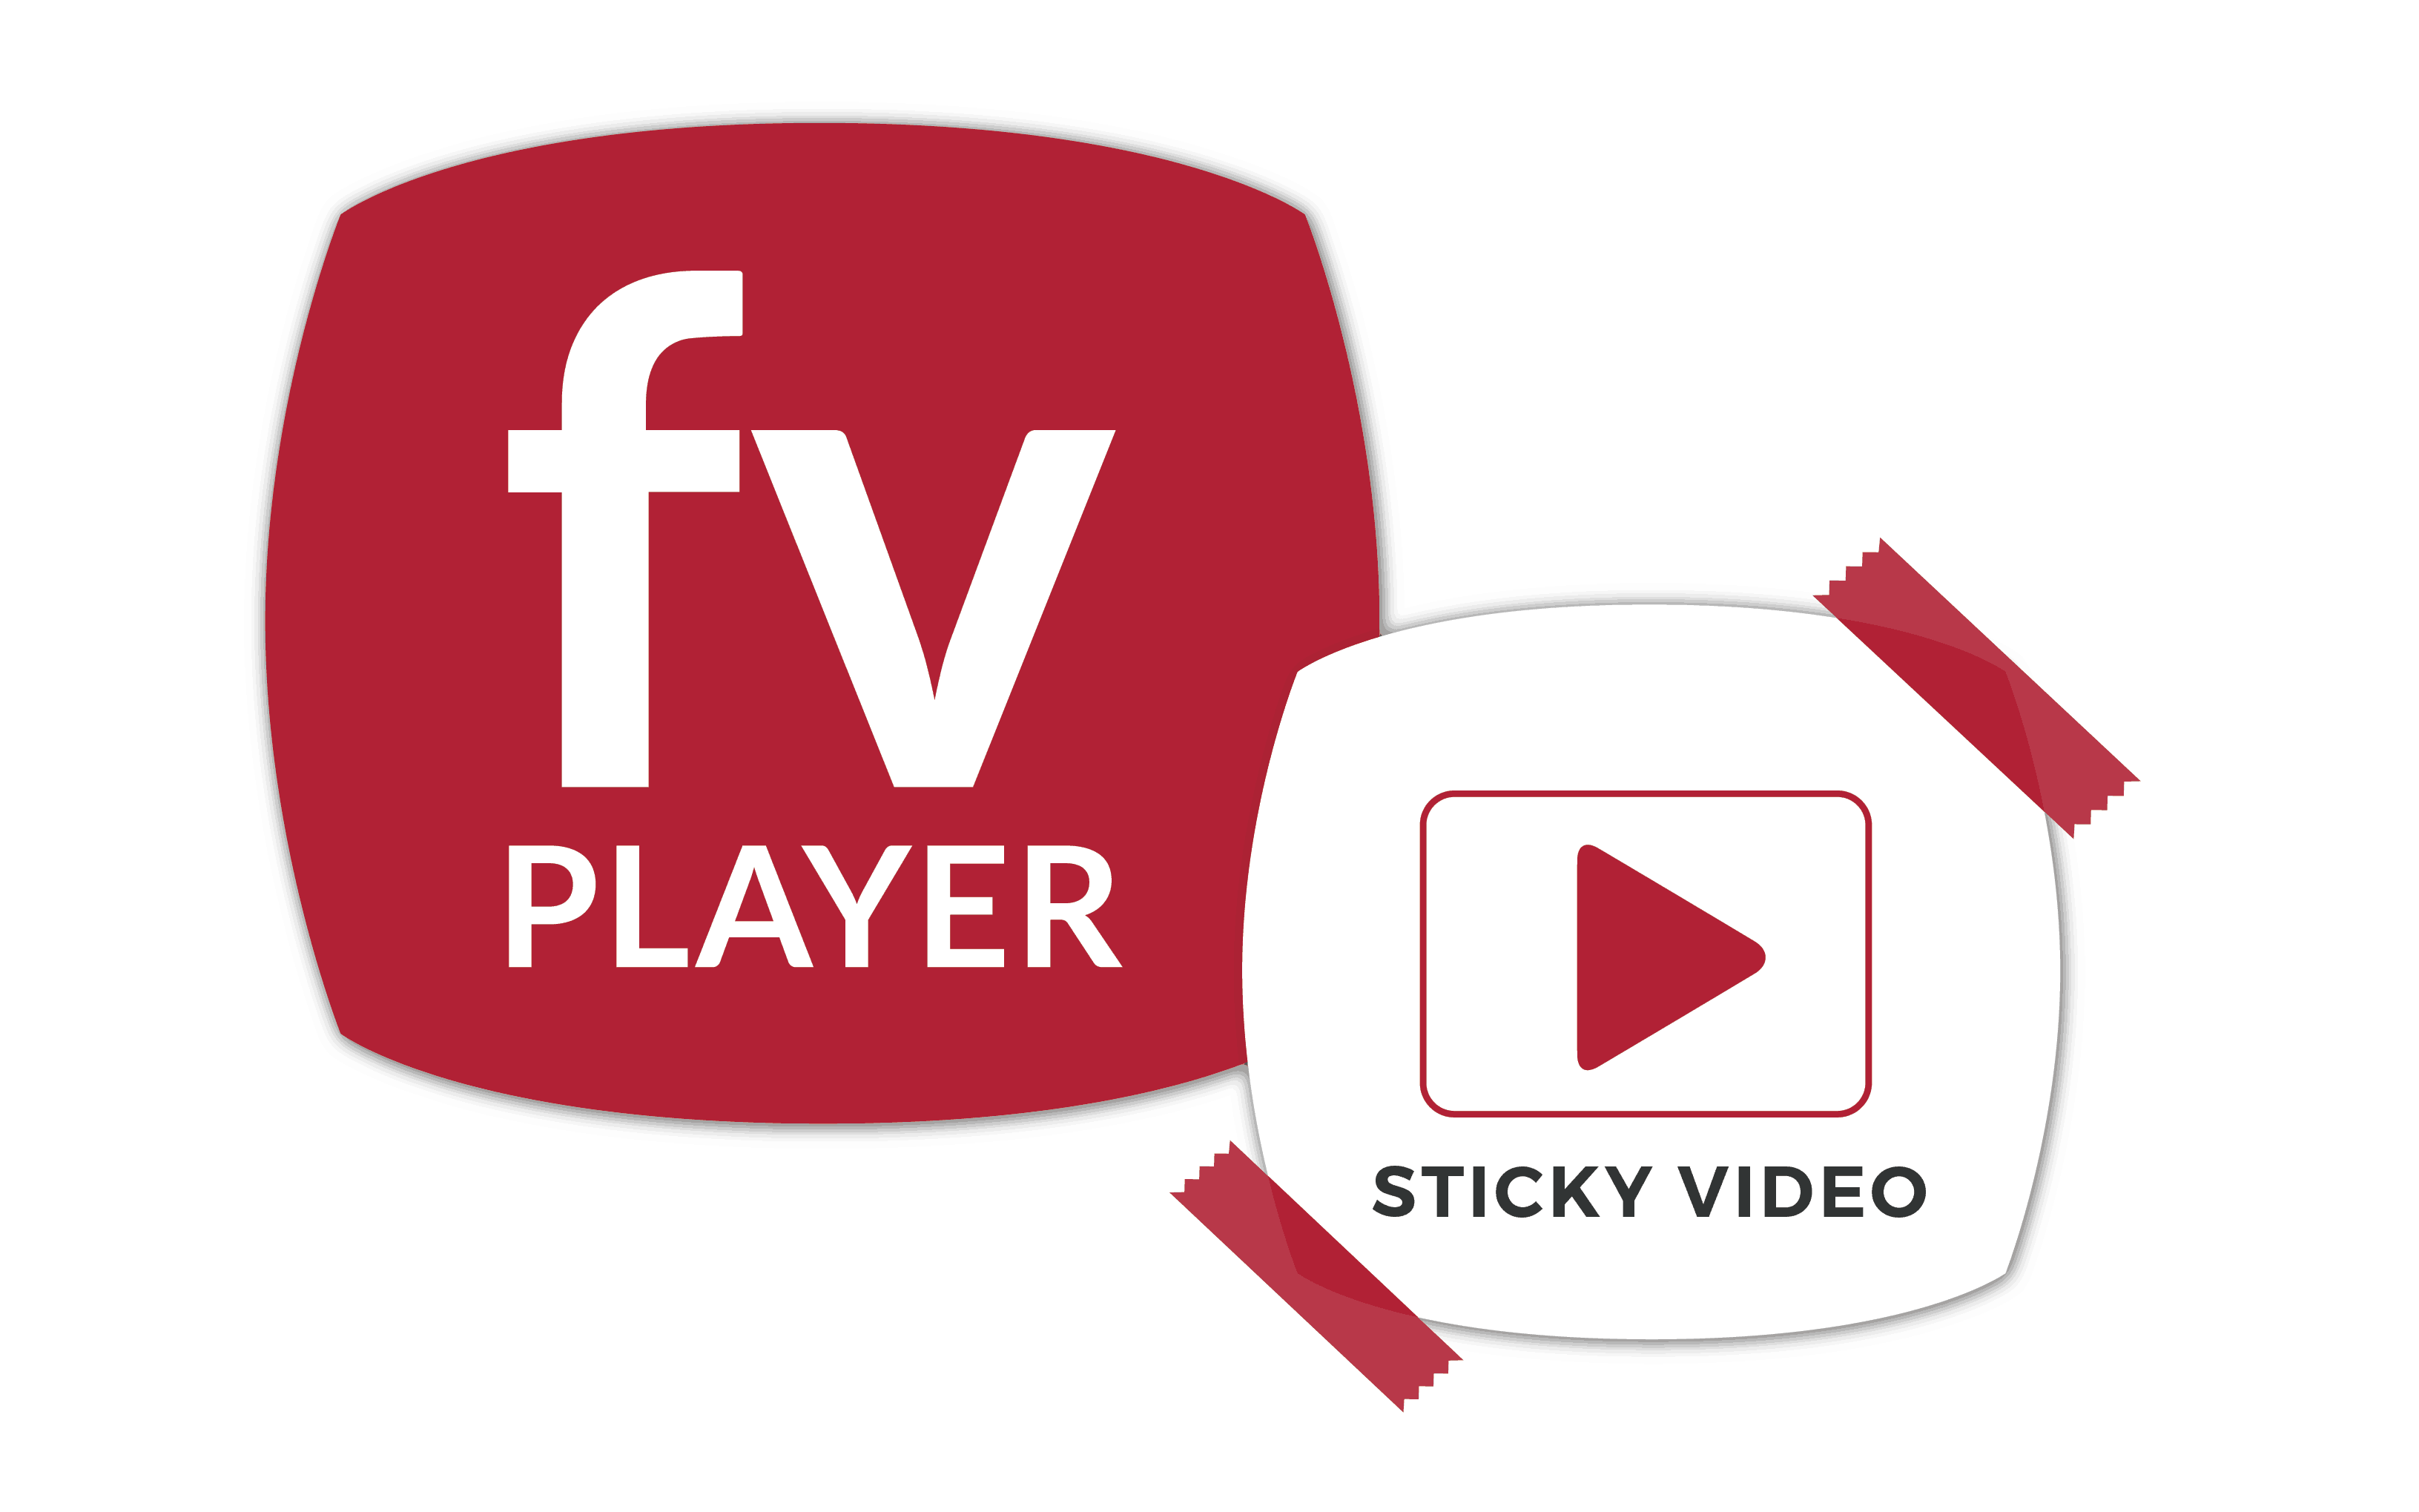 FV Player Sticky Video